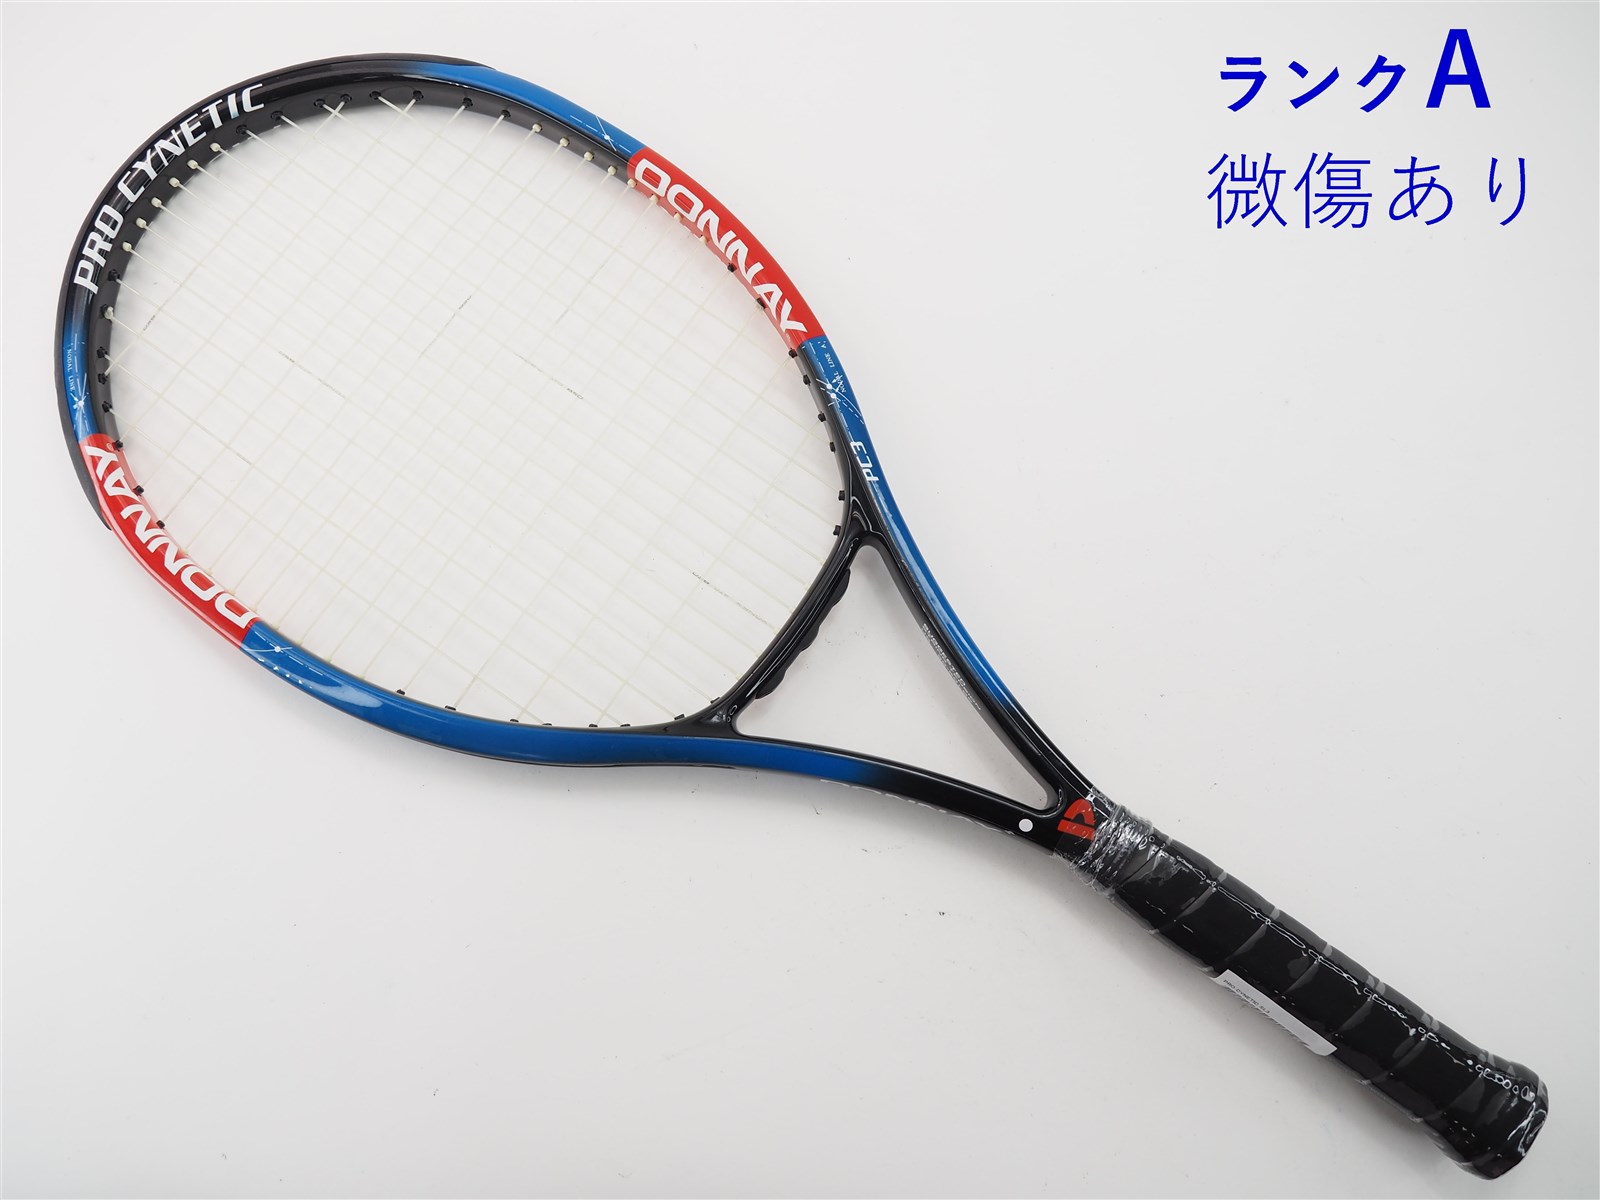 テニスラケット ドネー プロ キネティック (SL3)DONNAY PRO CYNETIC